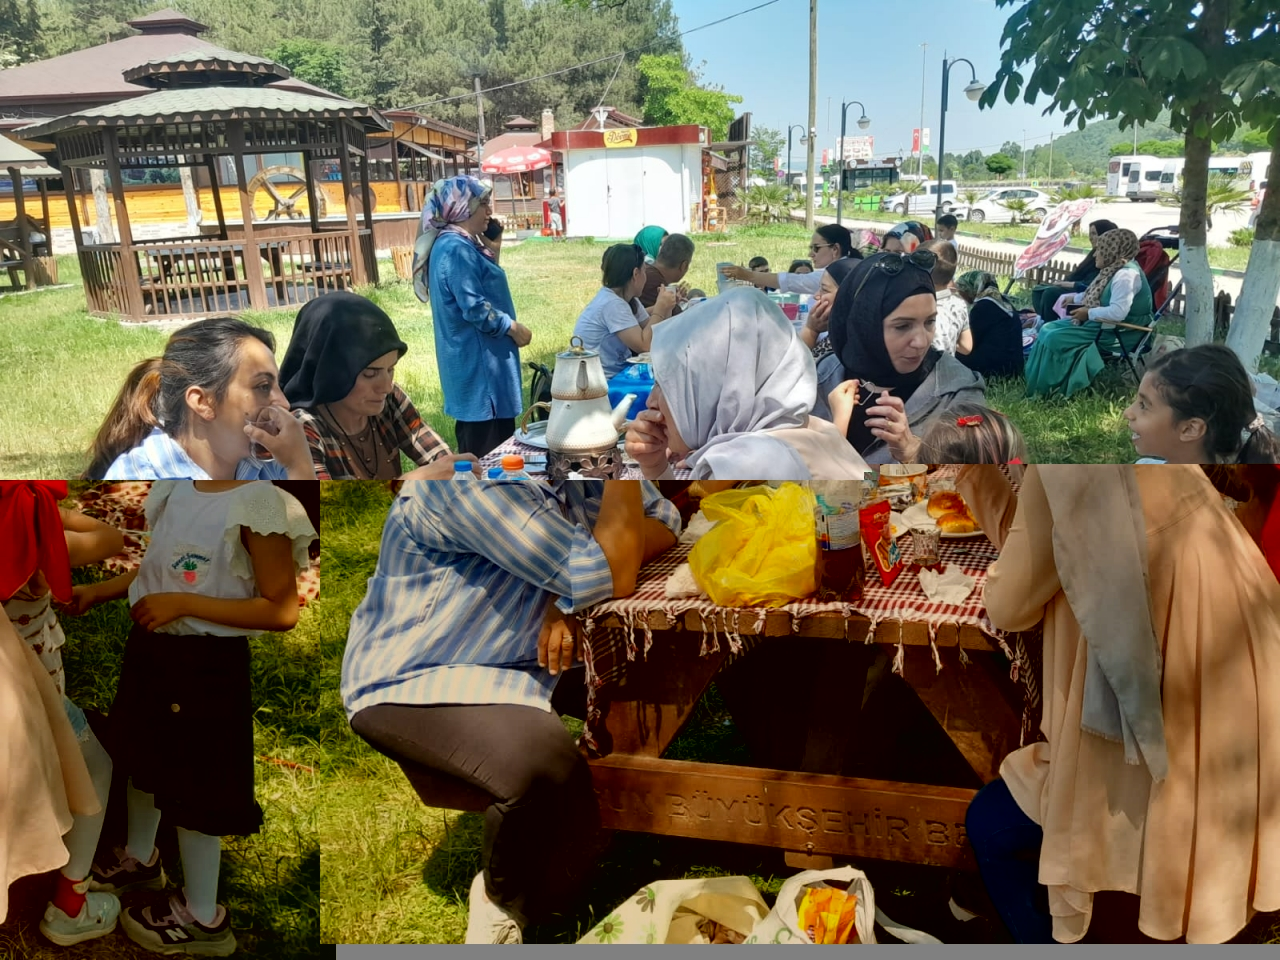 Kavak'ta vatandaşlar Güven Göleti Aile Piknik Alanı'nda vakit geçiriyor